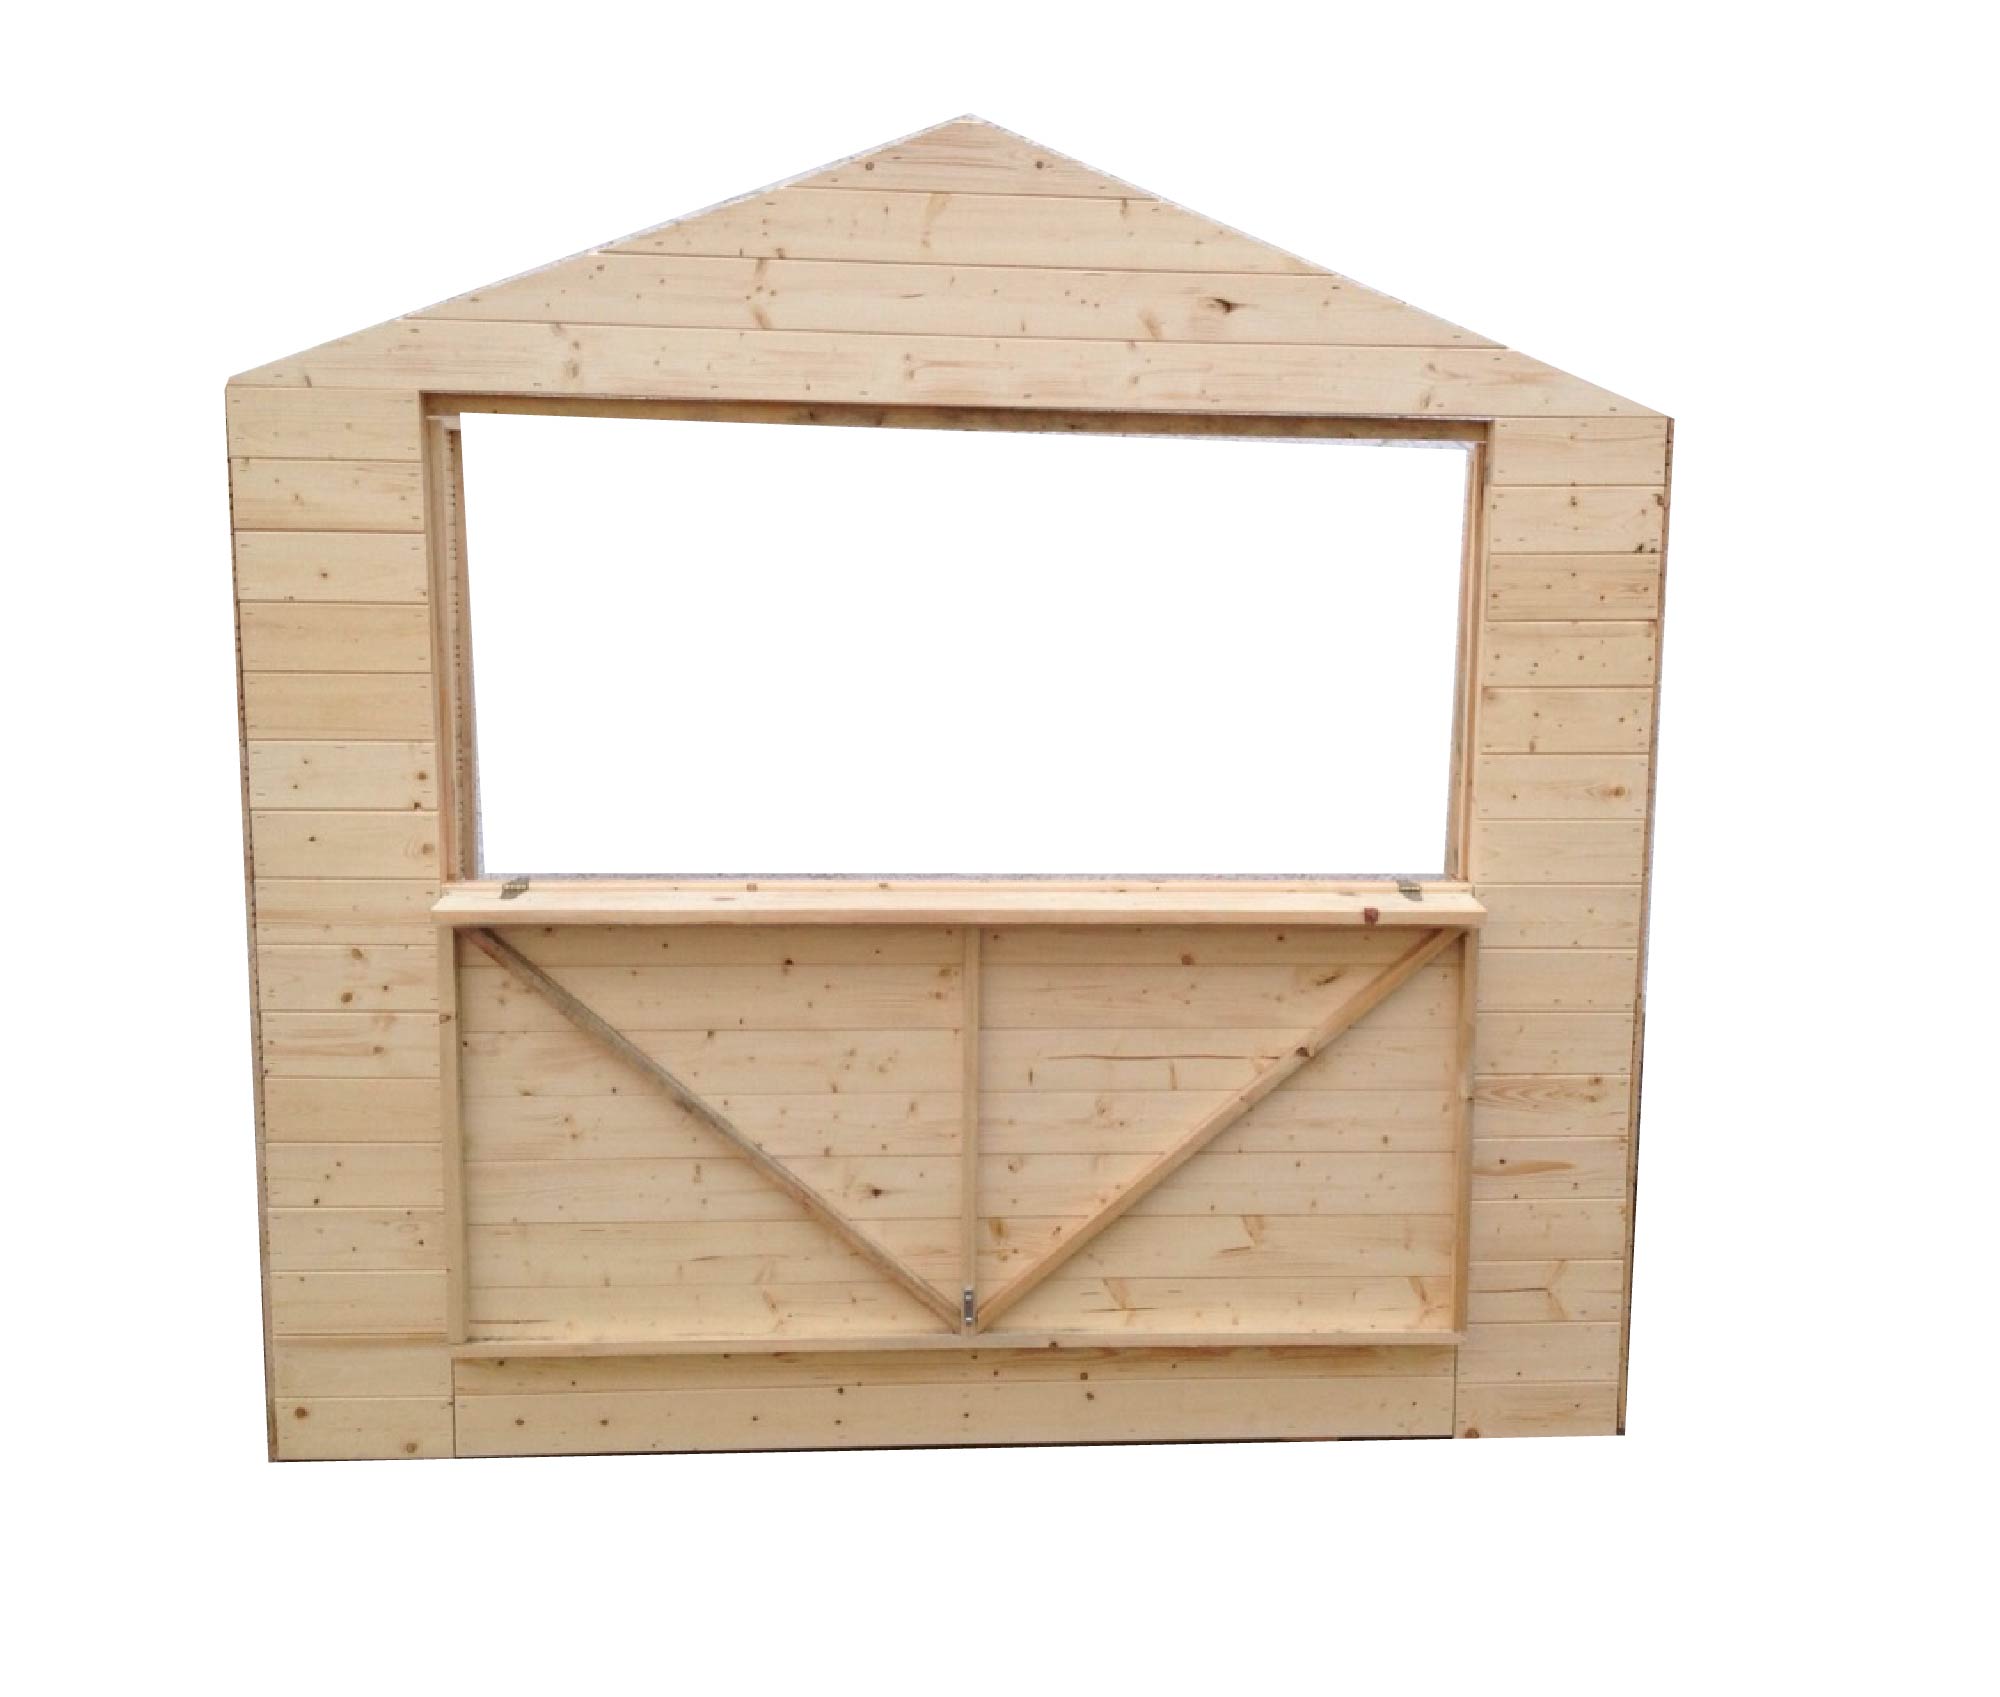 Kiosque (19mm),2,7x2,7x2,2m (2,4x2,4m) une fenêtre, kiosque en bois